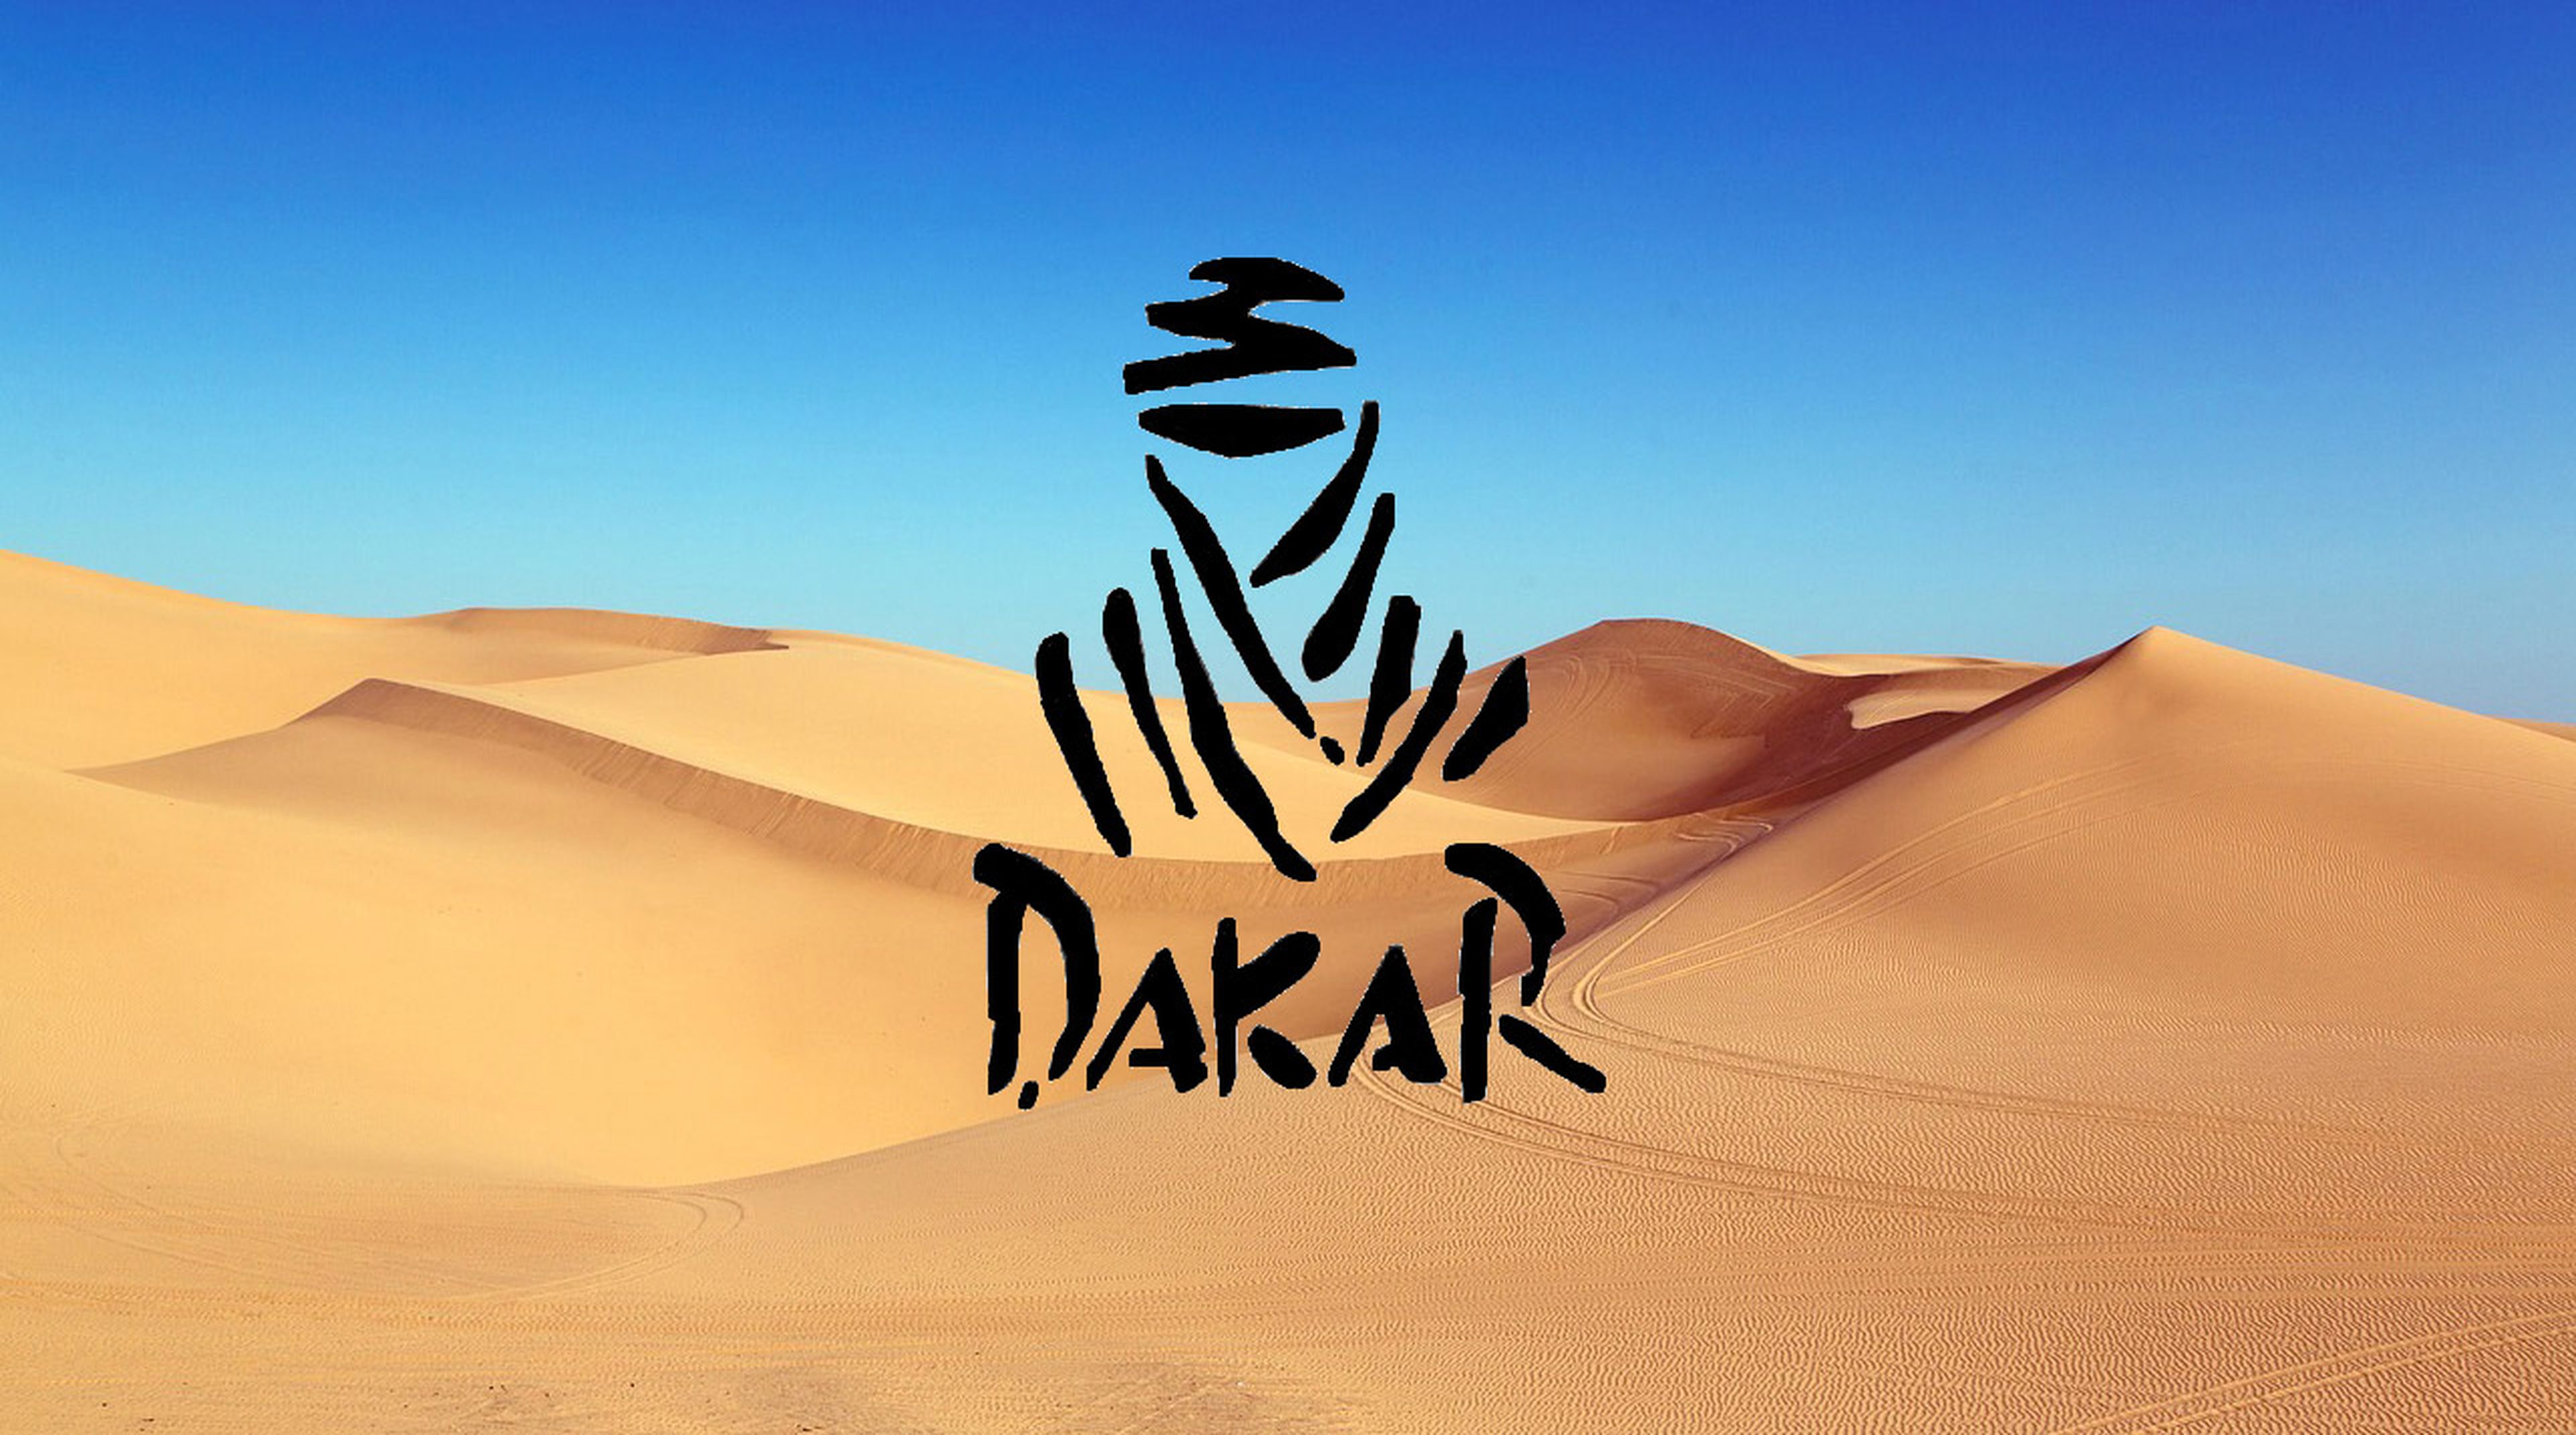 Африканский народ логотип дакар. Ралли Париж Дакар логотип. Золотой Бедуин Дакар. Париж Дакар эмблема Дакар.